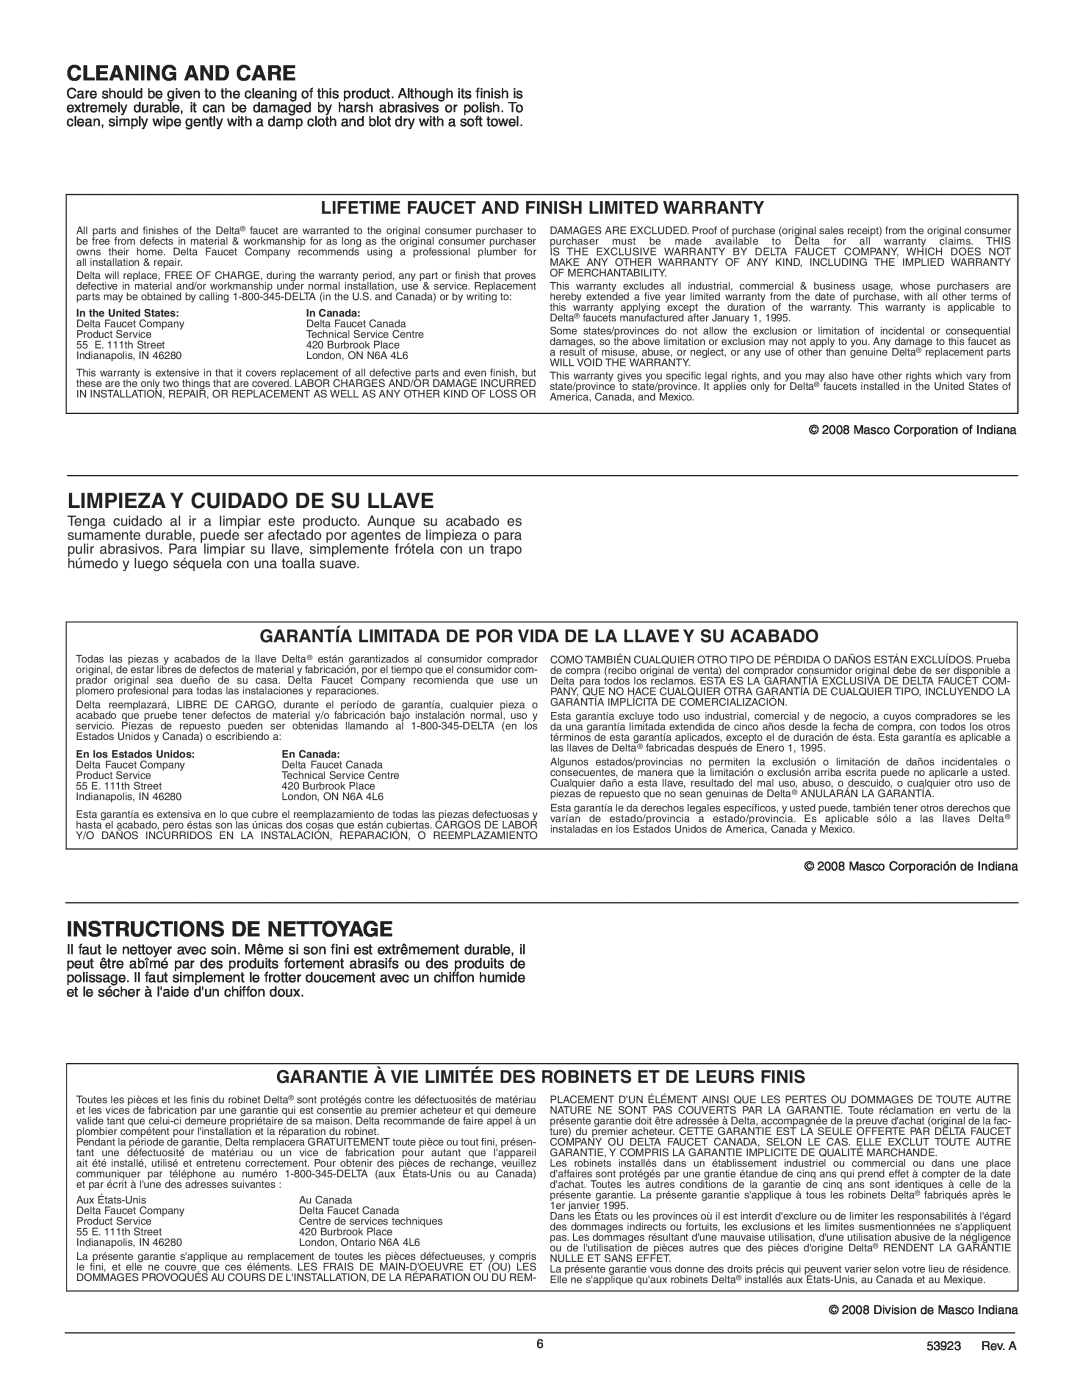 Delta 2555 Series manual Cleaning And Care, Limpieza Y Cuidado De Su Llave, Instructions De Nettoyage 